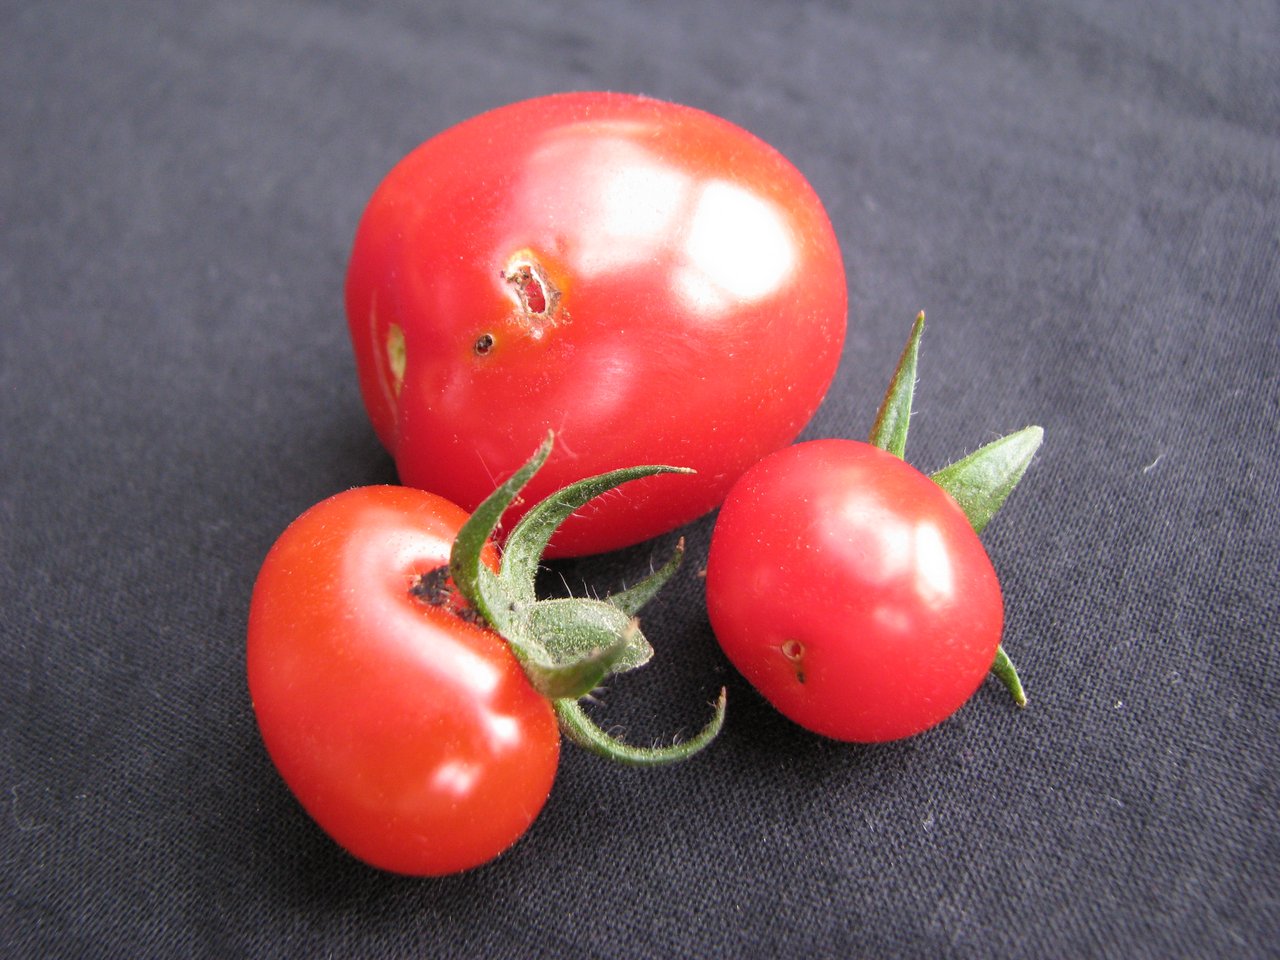 Frassspuren der Tomaten-Miniermotte.